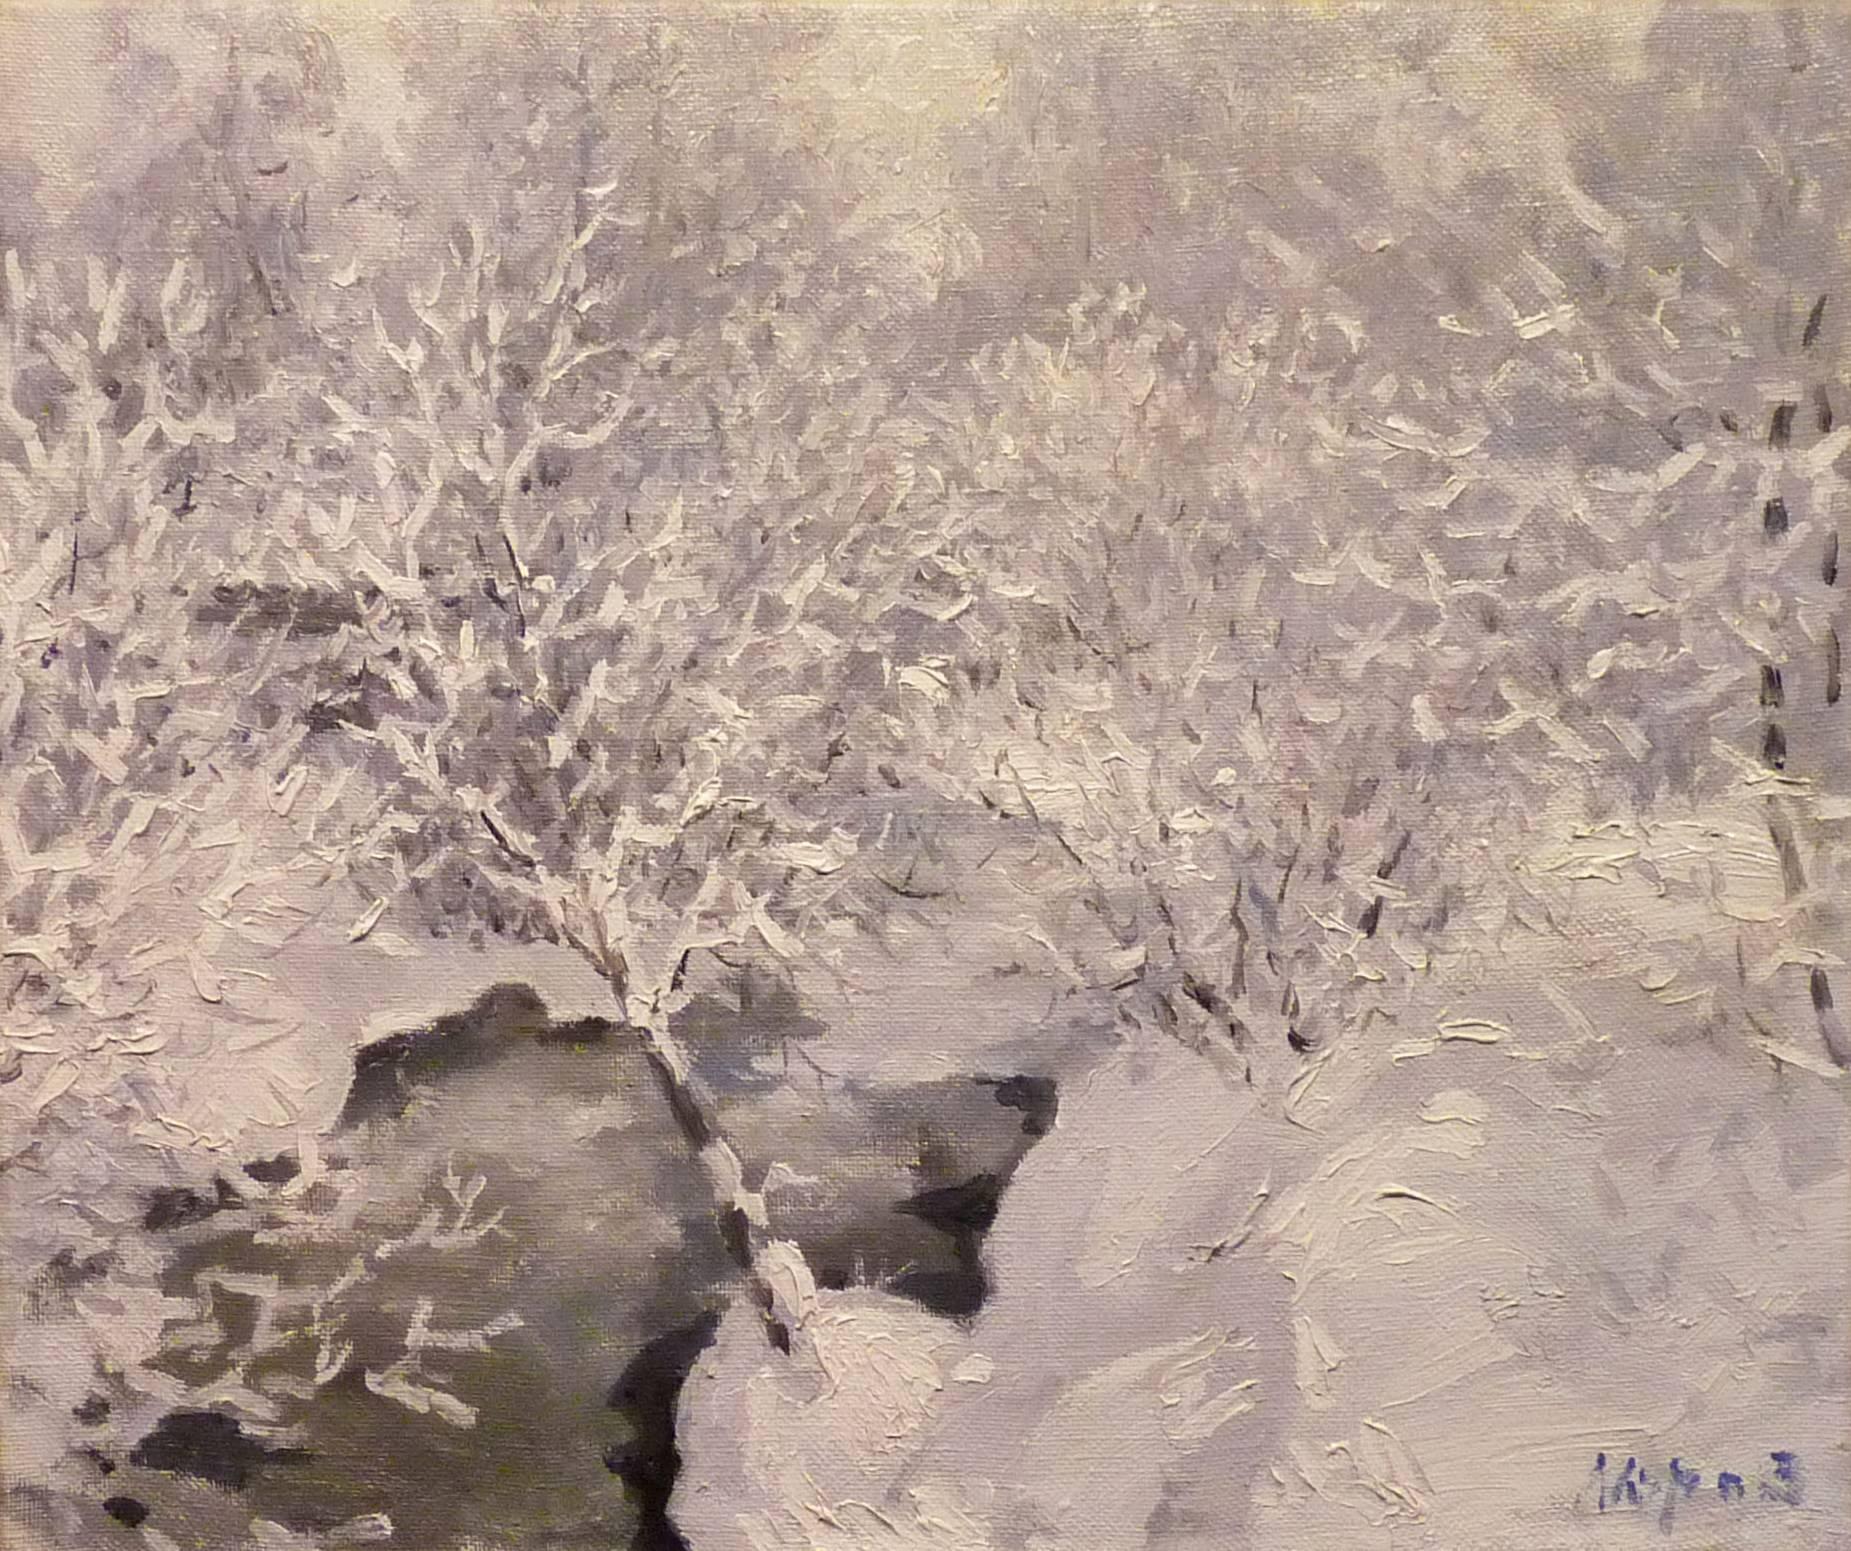 Landscape Painting Georgij Moroz - « Frost in the forest » ( Frost dans la forêt)   Pétrole  cm. 58 x 49 1997, blanc, gris